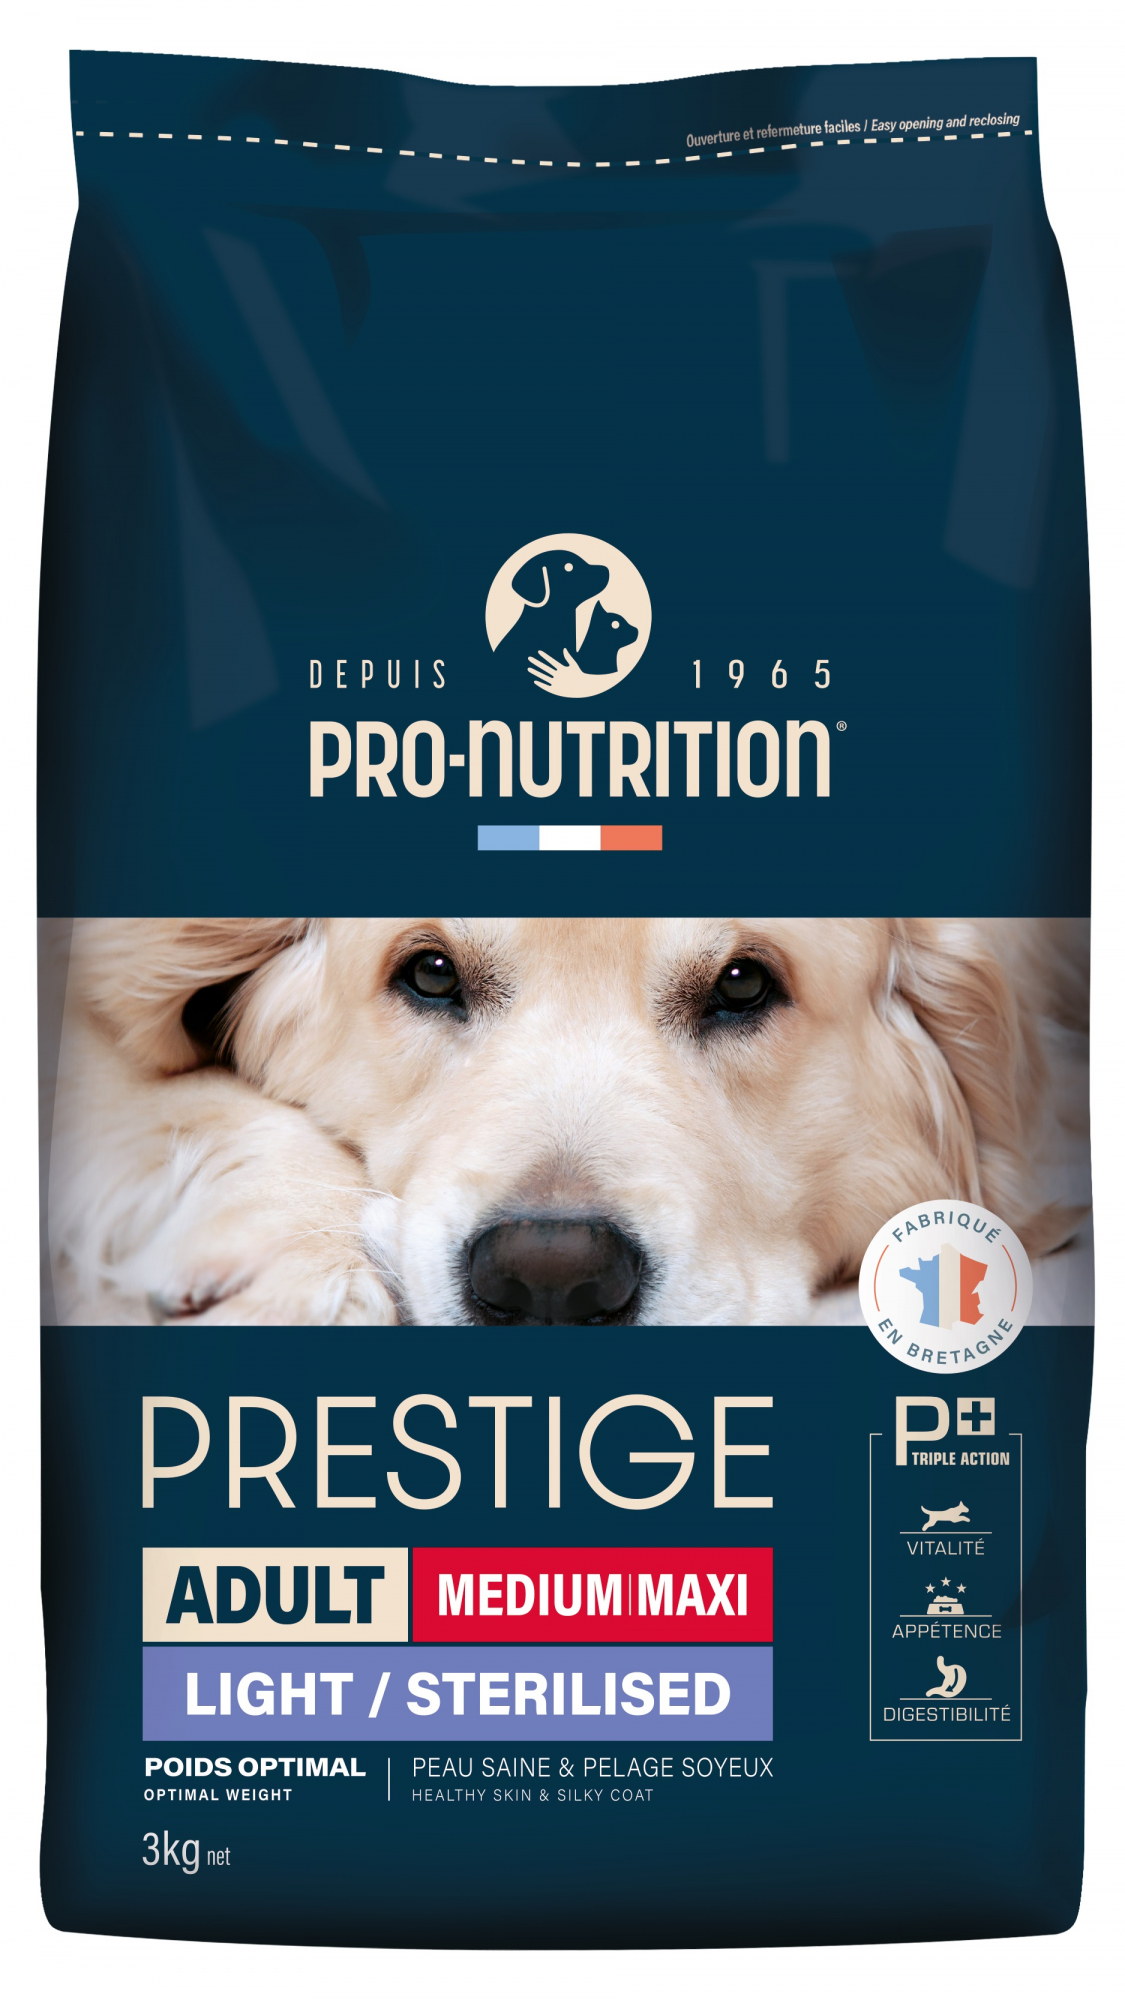 PRO-NUTRITION PRESTIGE Light & Sterilized